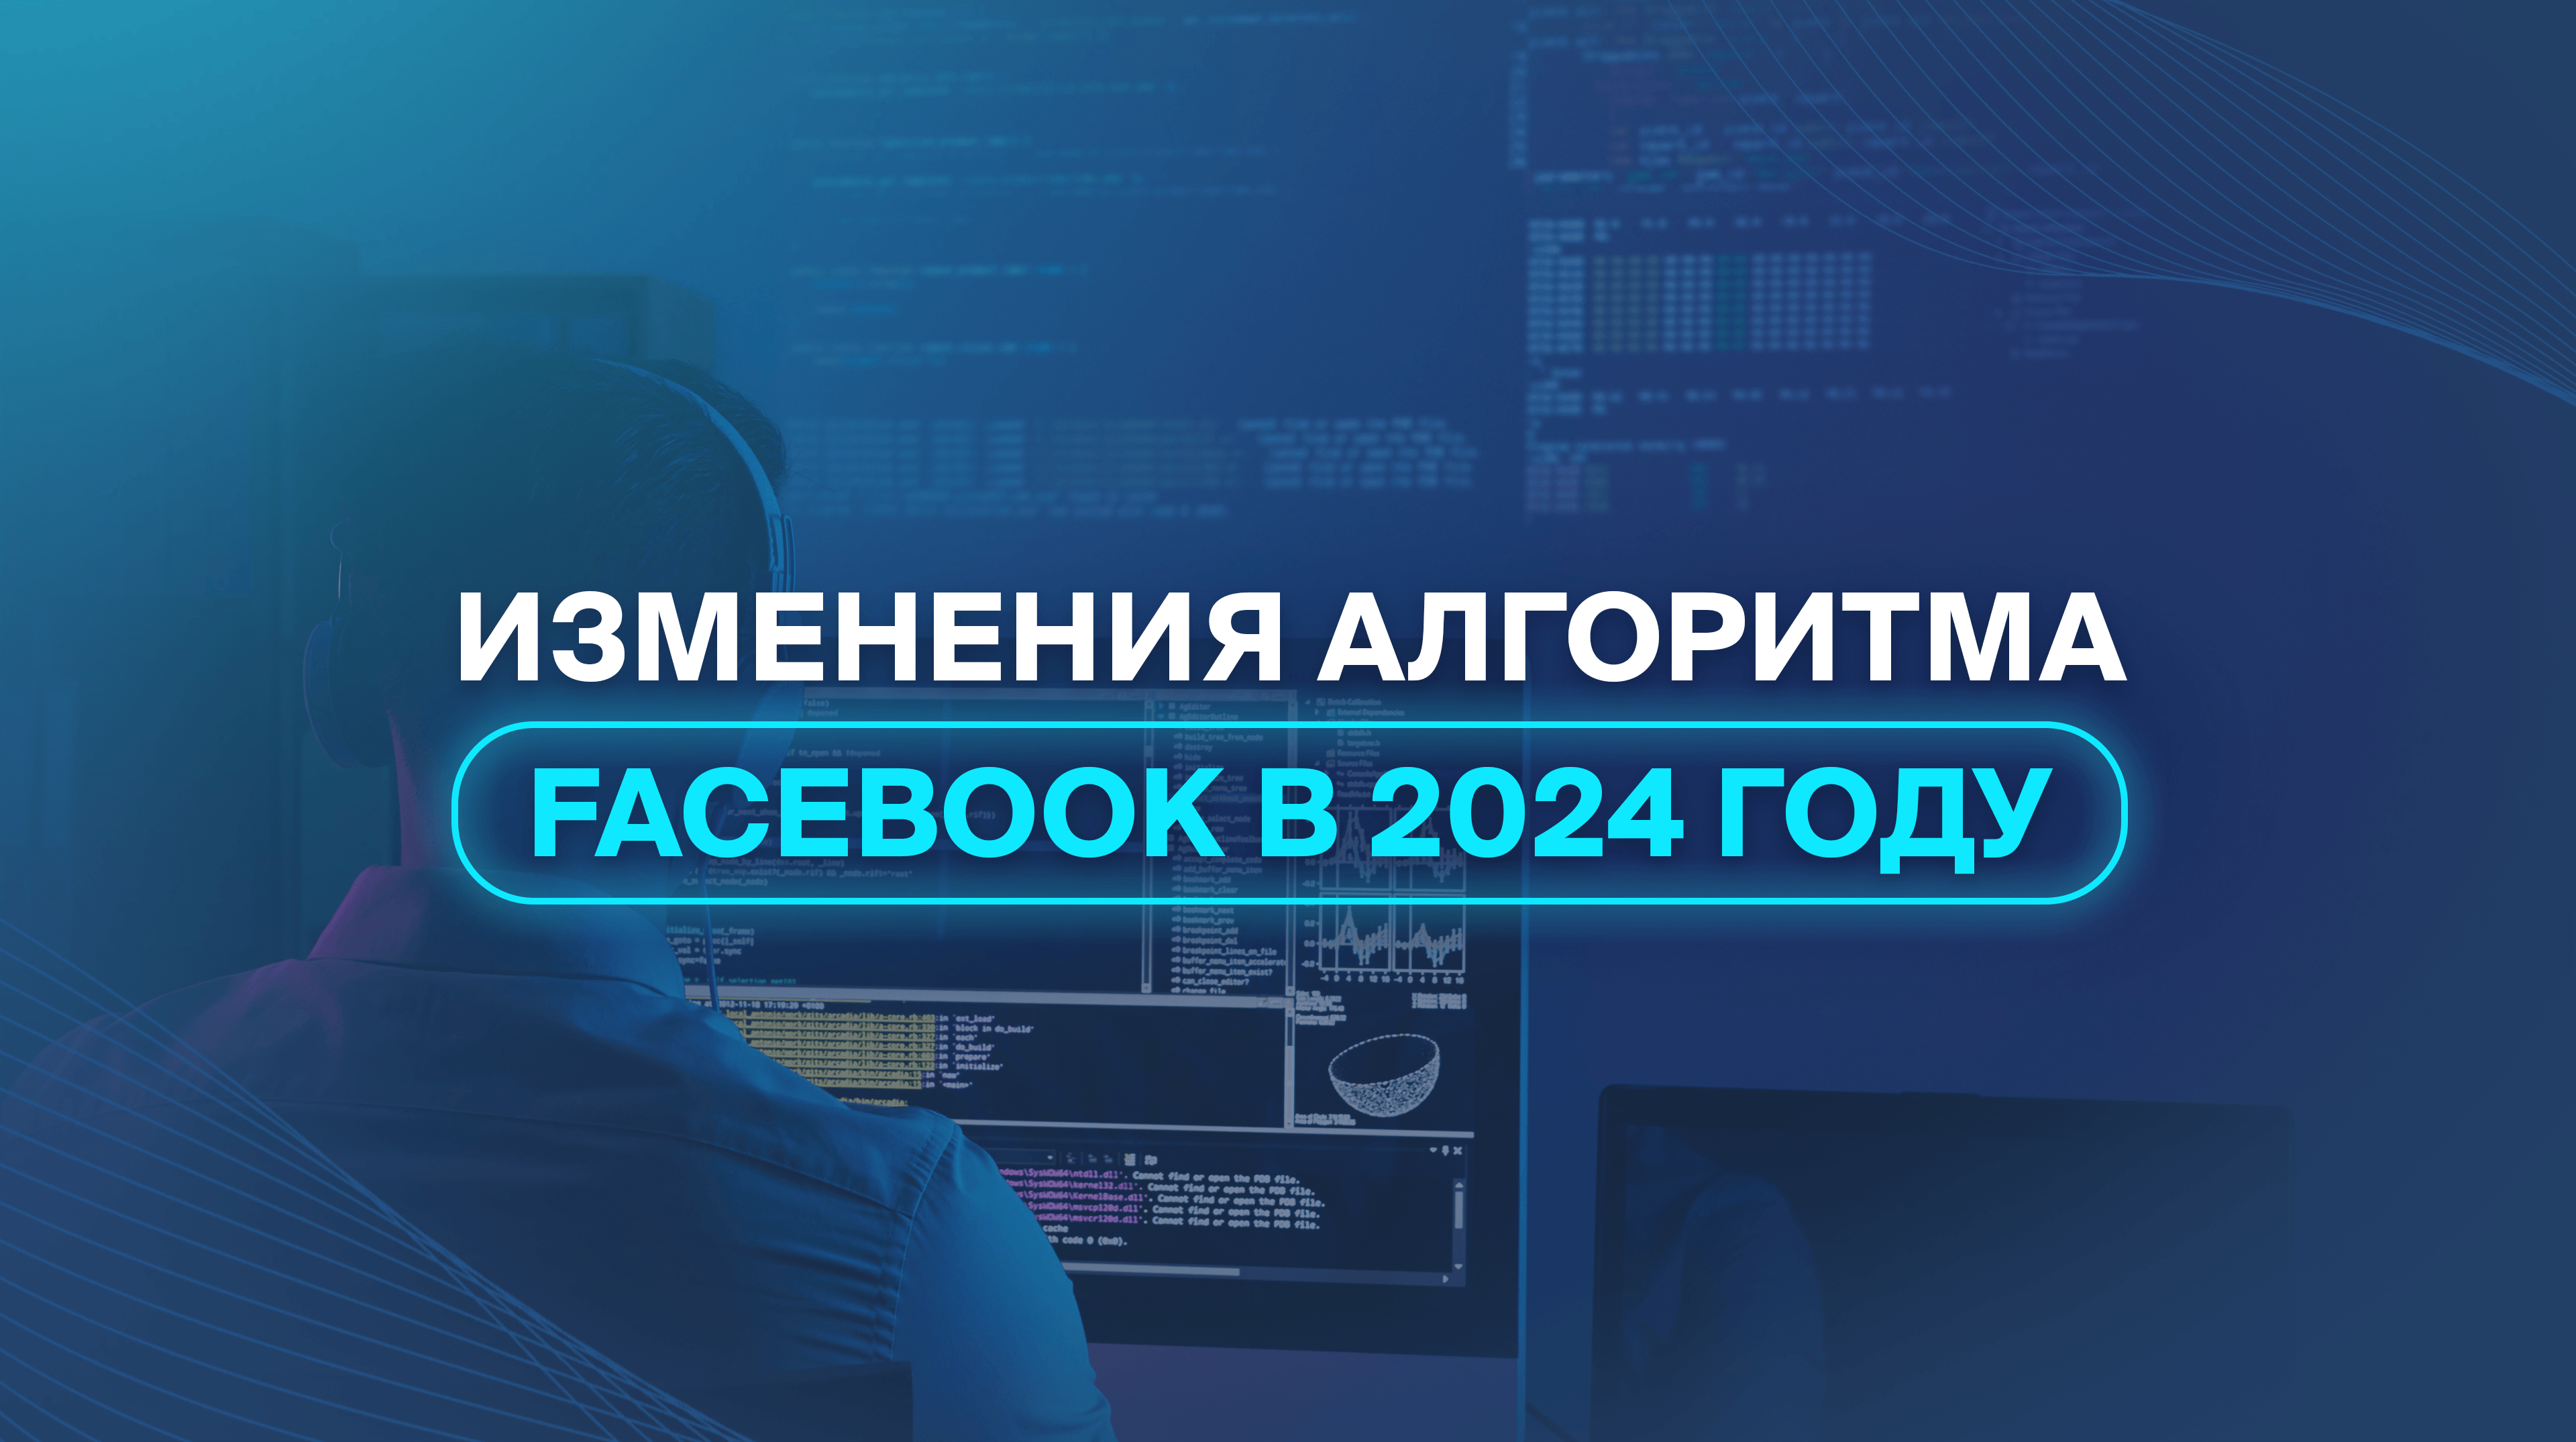 Изменения алгоритма Facebook в 2024 году